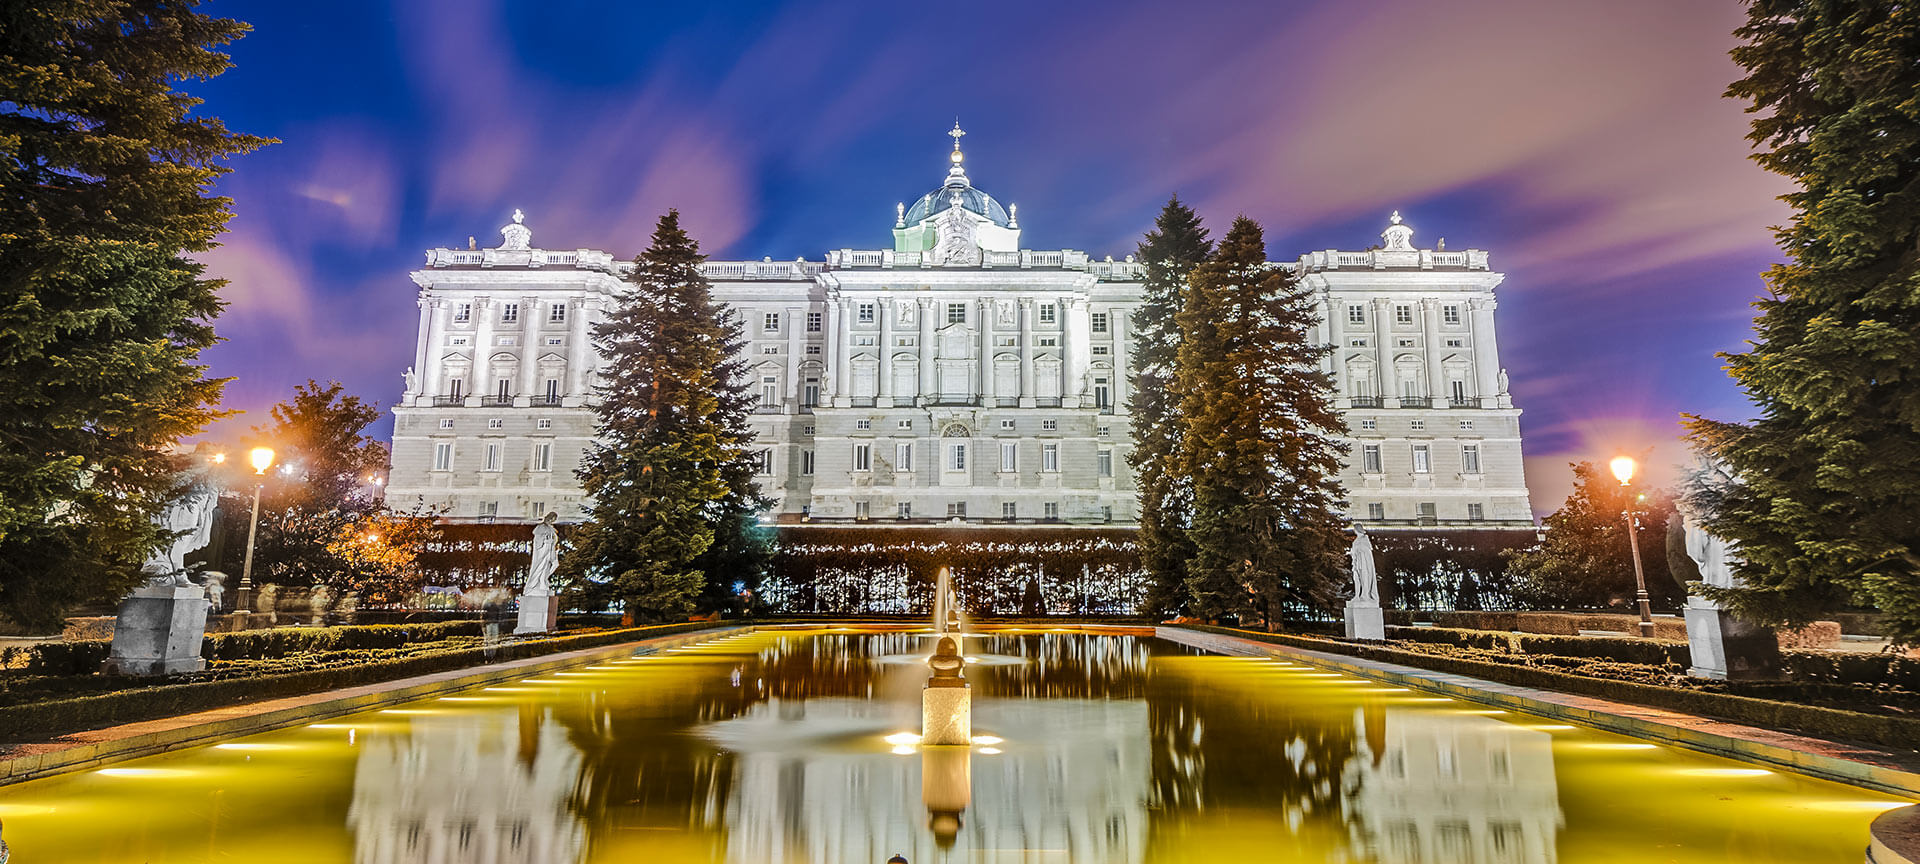 Pera capítulo Me preparé Palazzo Reale di Madrid. Informazioni e storia | spain.info